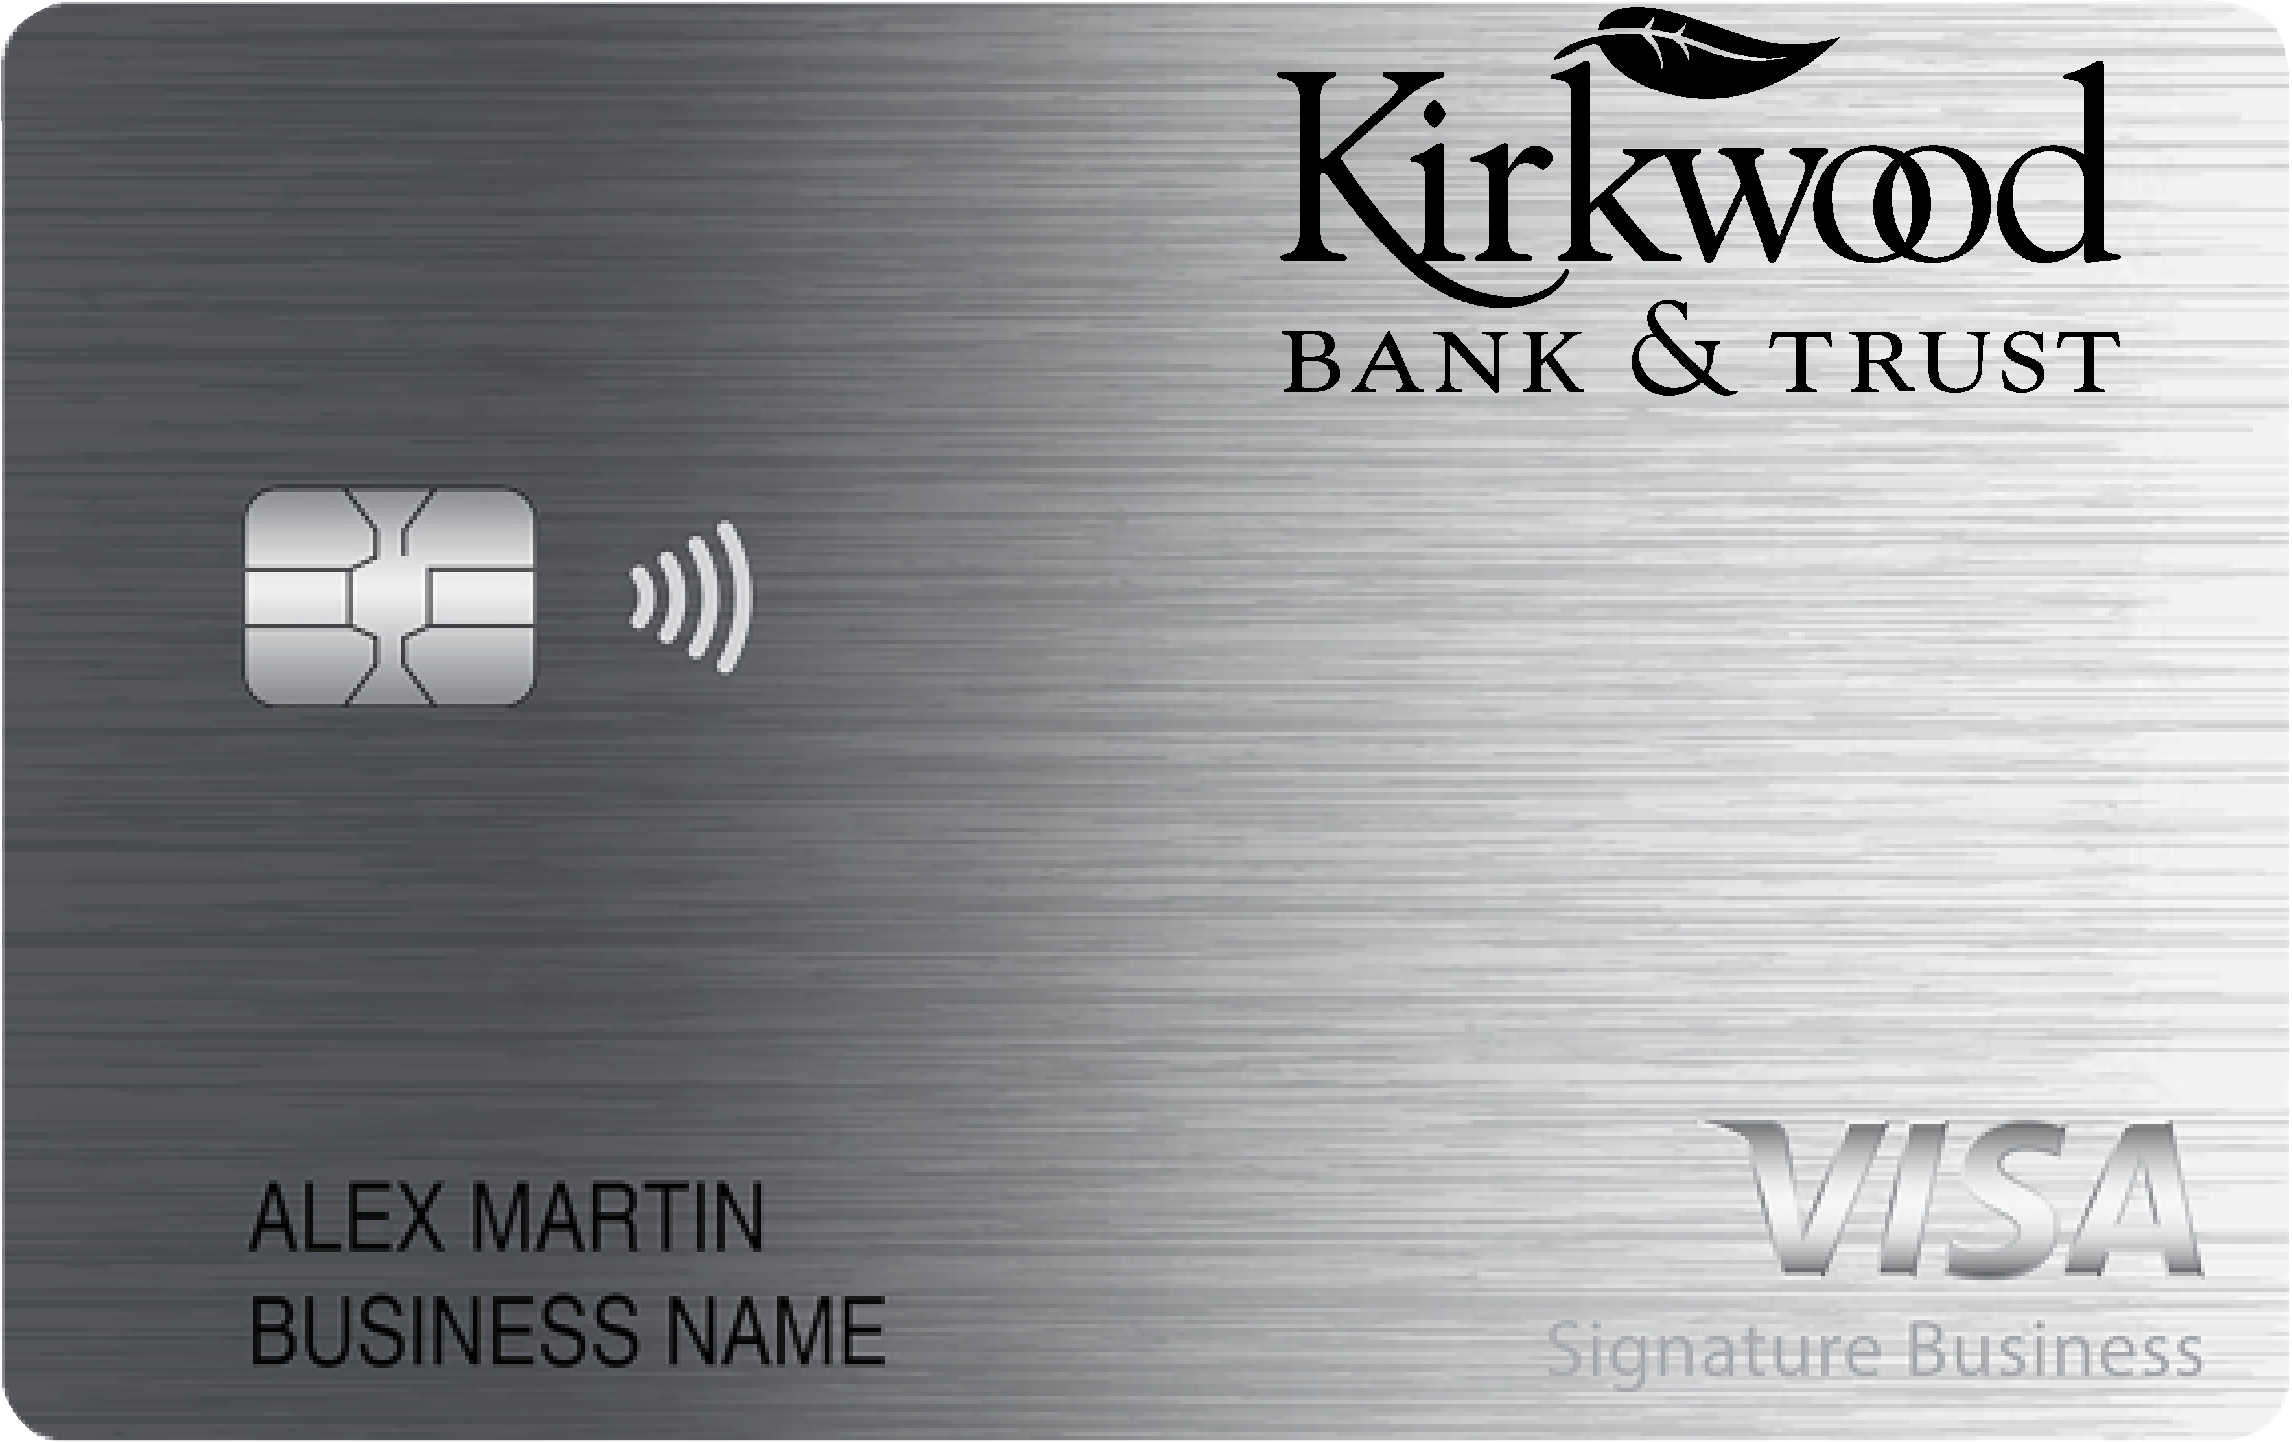 Kirkwood Bank & Trust Co Smart Business Rewards Card